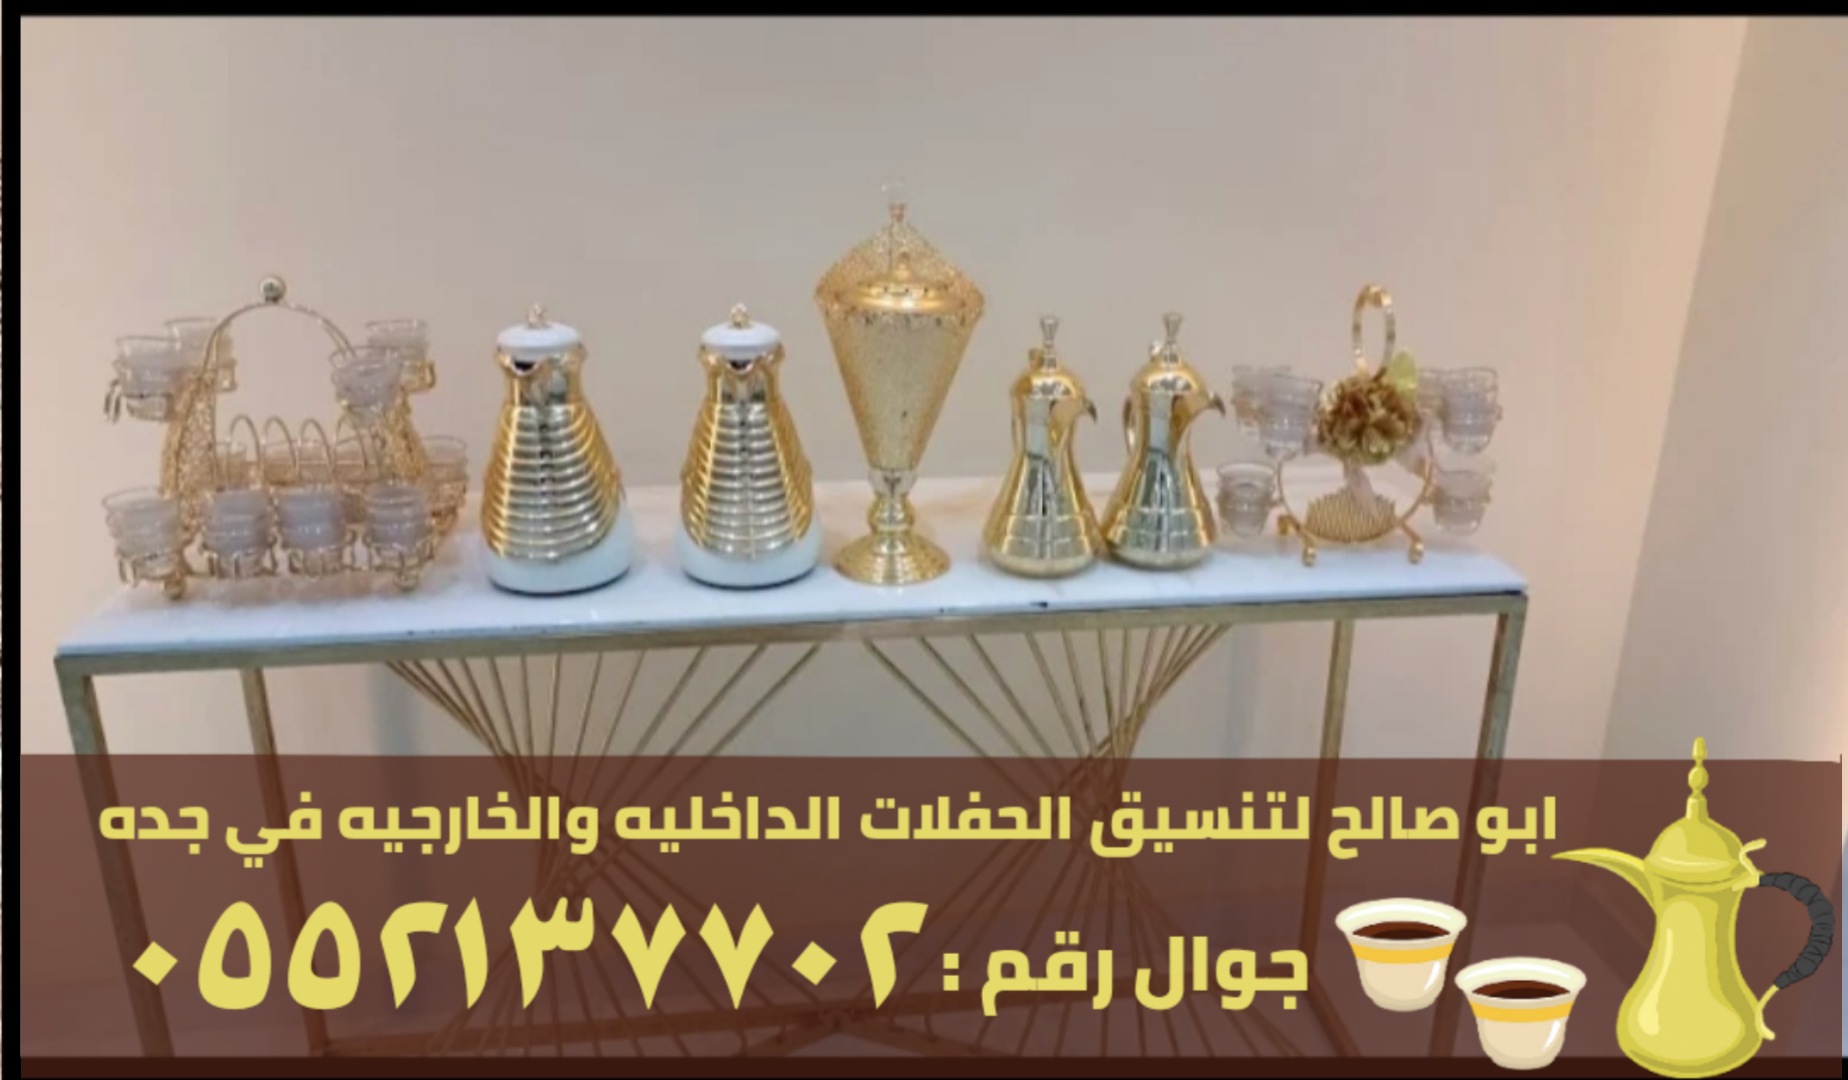 صبابين ومباشرين قهوة في جدة , 0552137702 P_2371s913d3